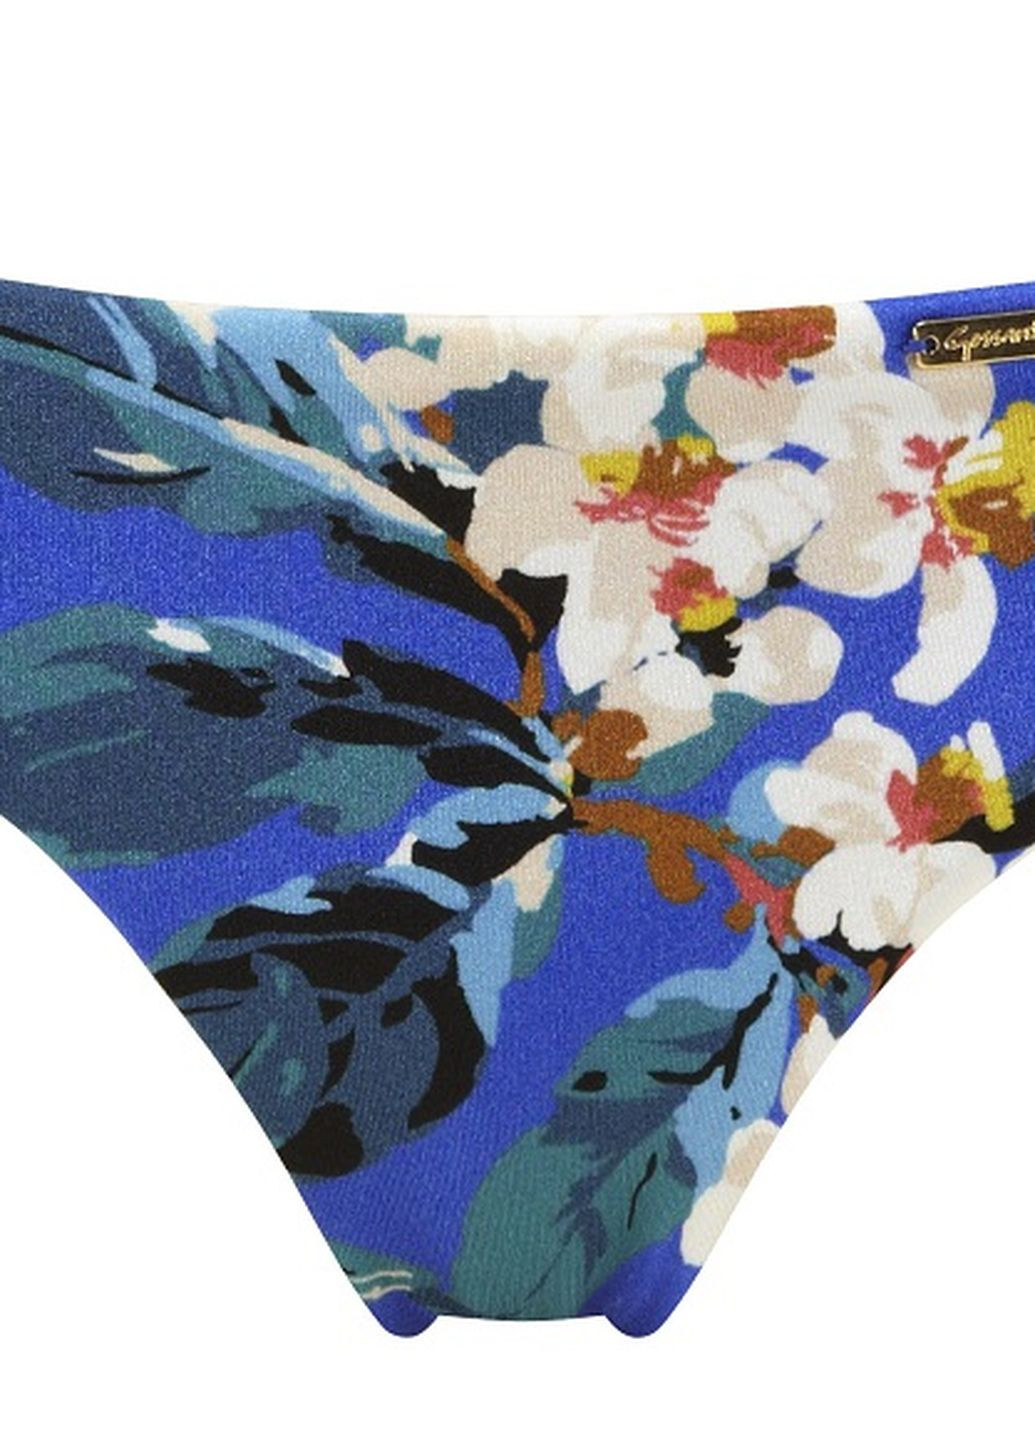 Голубой летний купальник blossom 11271/11273 раздельный, бандо Gossard